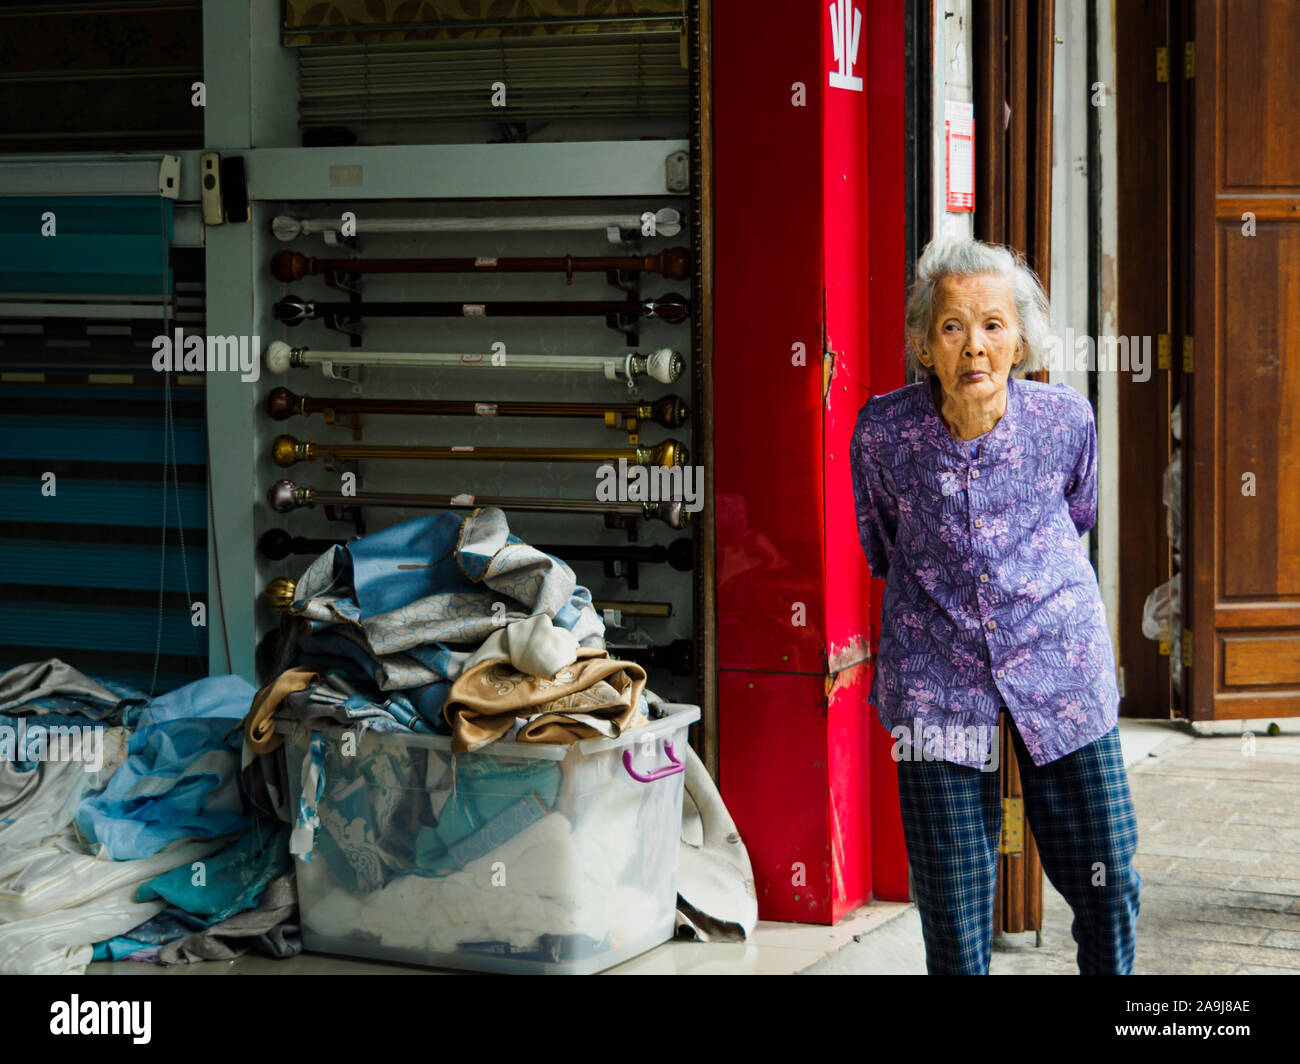 HAIKOU, Hainan in Cina - Mar 2, 2019 - Anziani donna cinese facendo una passeggiata nel centro della città di Haikou. La Cina ha un rapido invecchiamento della popolazione. Foto Stock